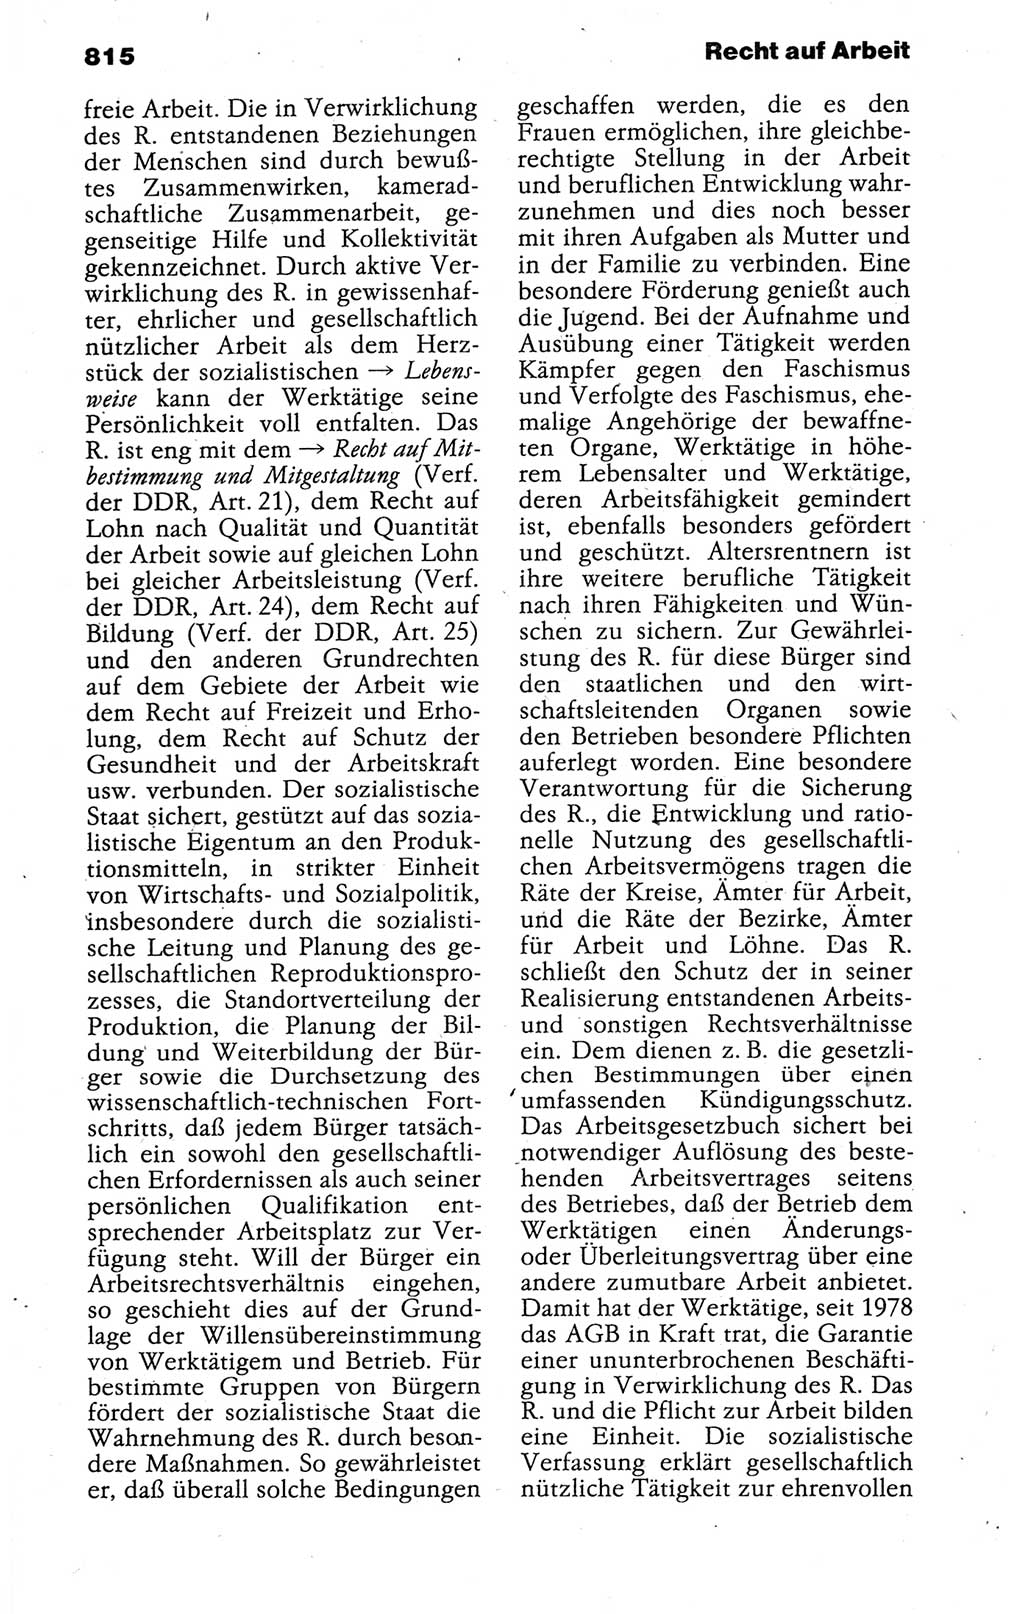 Kleines politisches Wörterbuch [Deutsche Demokratische Republik (DDR)] 1988, Seite 815 (Kl. pol. Wb. DDR 1988, S. 815)